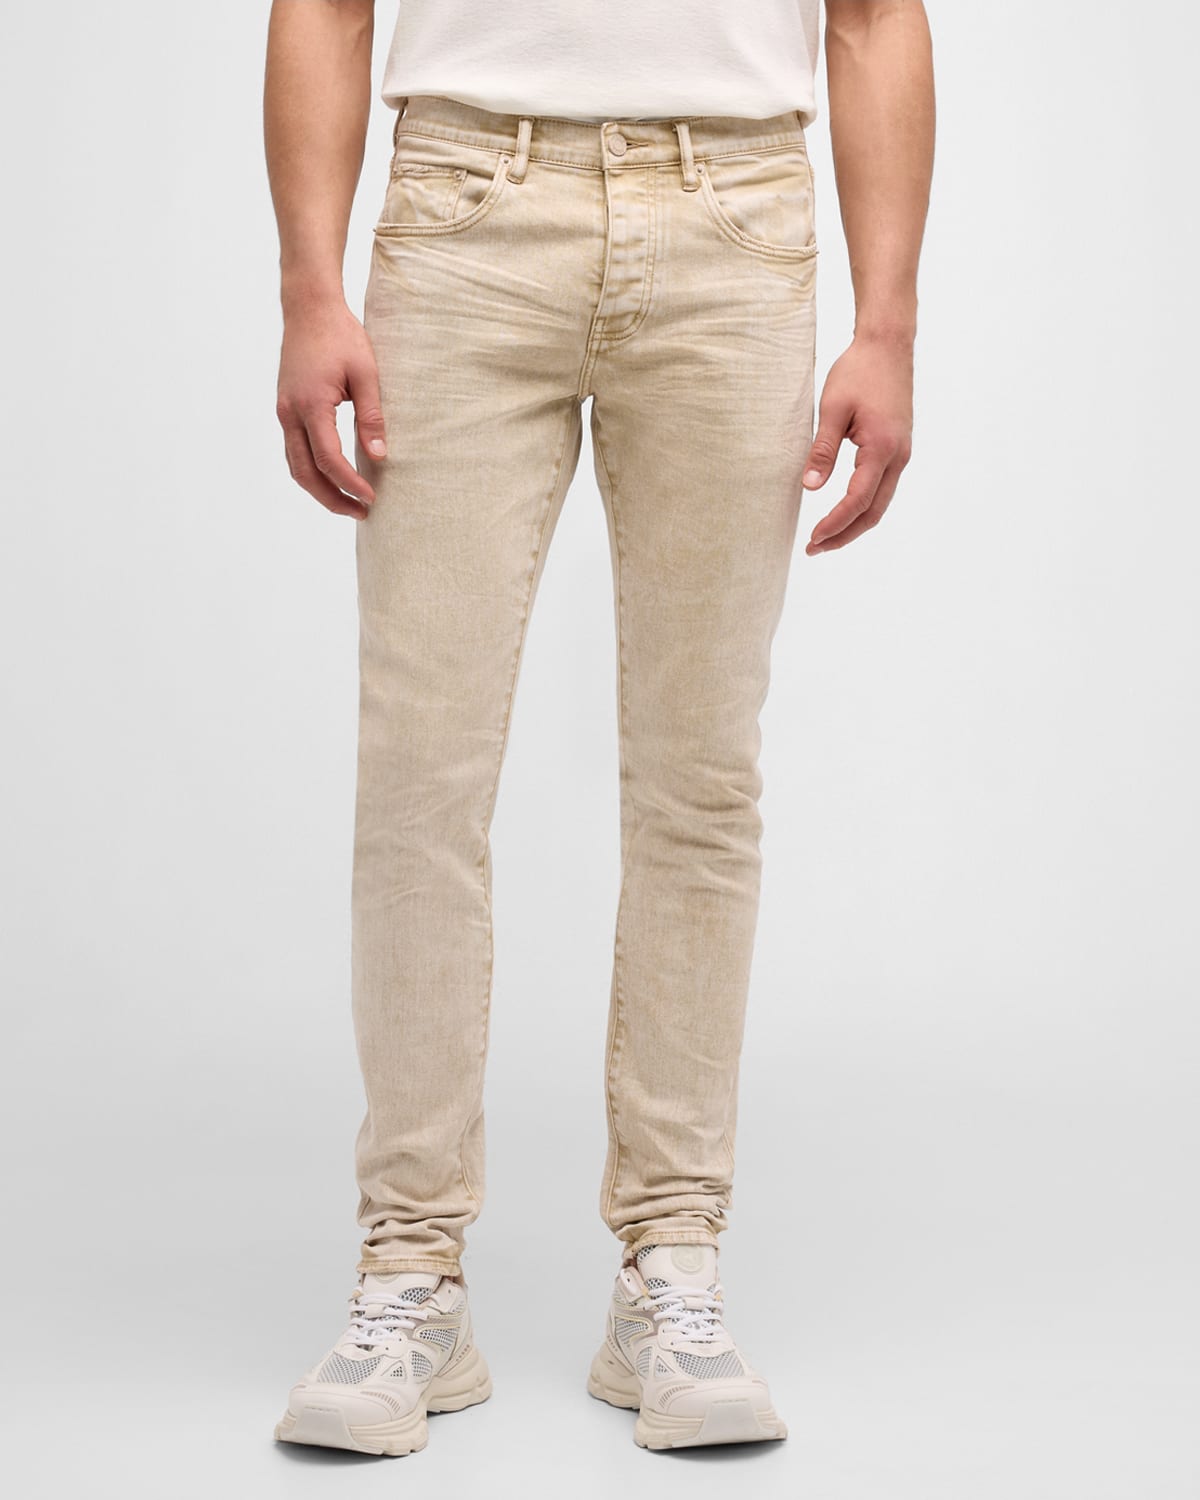 Men's Skinny Khaki Denim Jeans